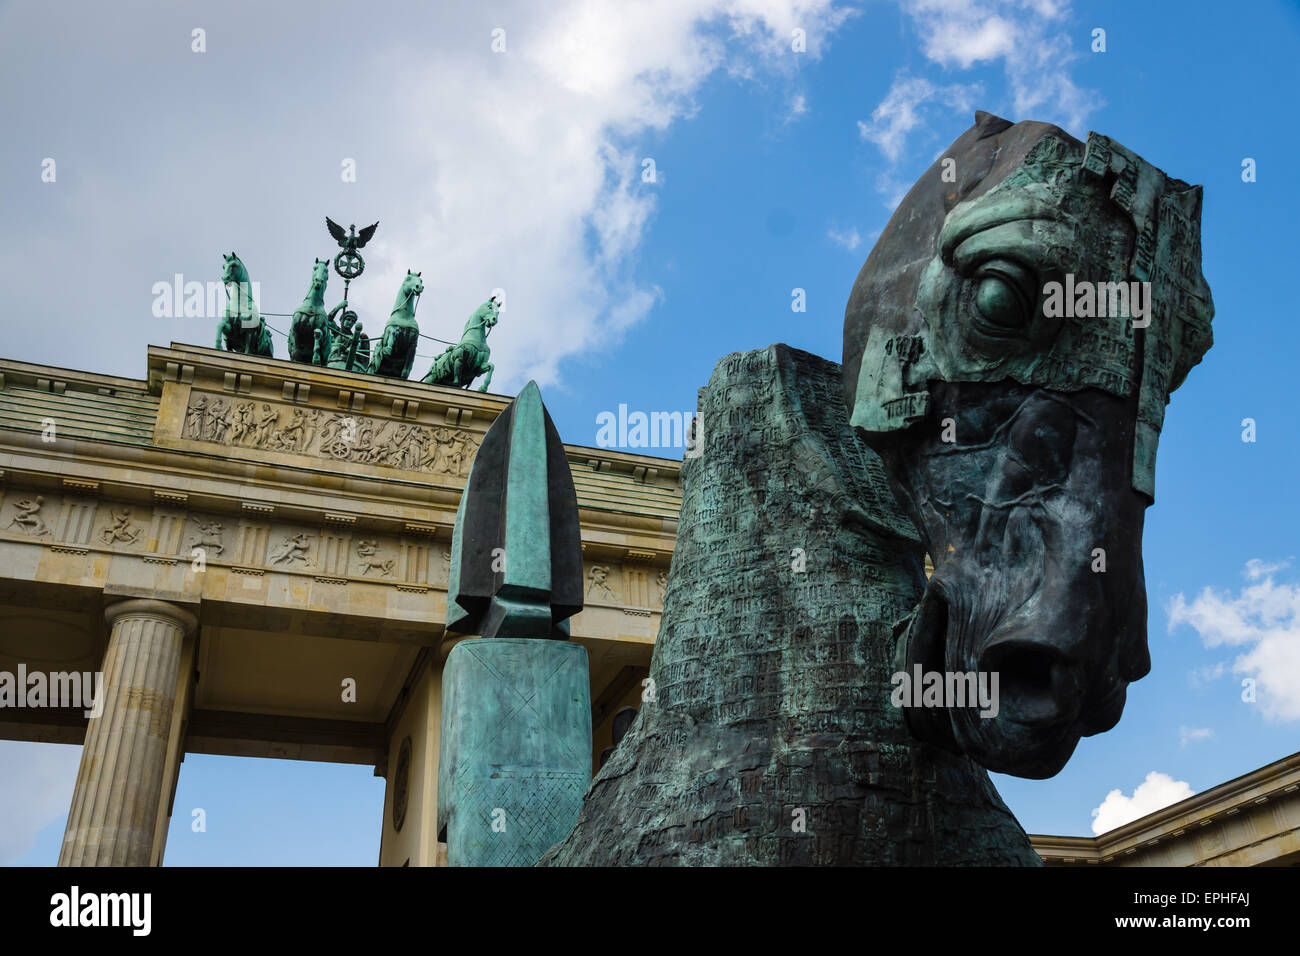 Gustavo Aceves presents his sculptures at the exhibition 'Lapidarium',  Pariser Platz near the Brandenburg Gate. Stock Photo